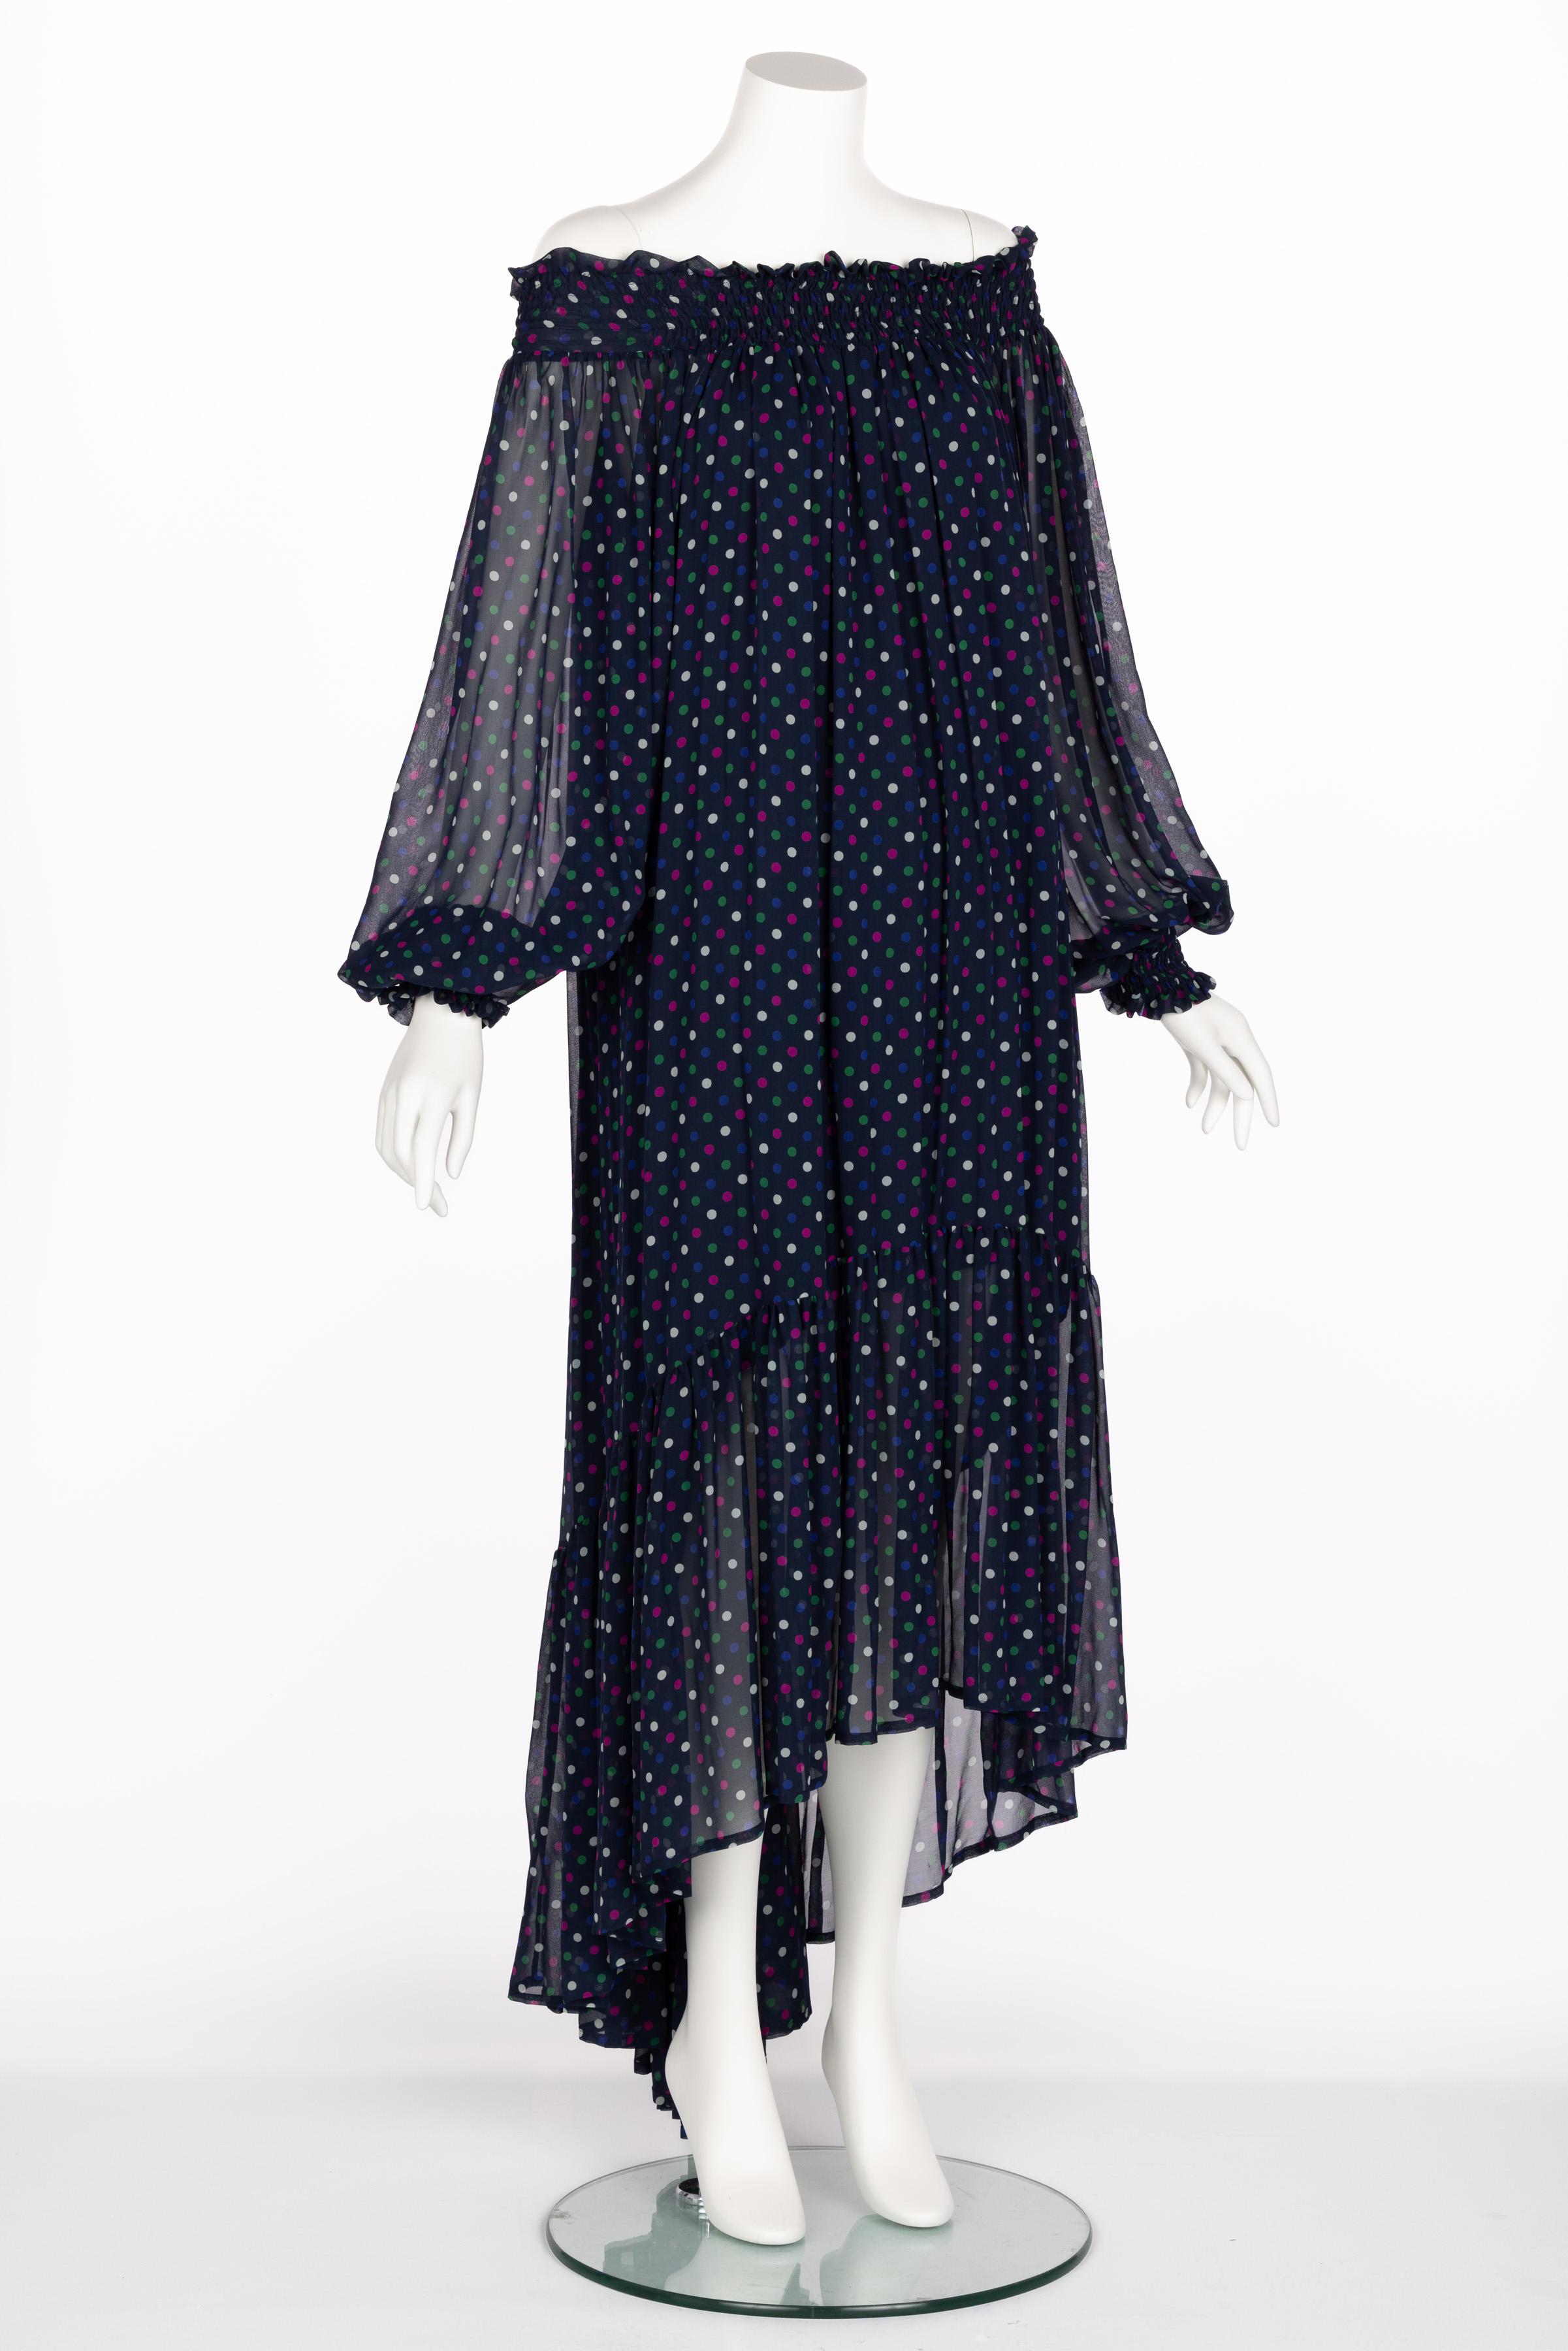 Saint Laurent Blue Polka Dot Off Shoulder Silk Dress YSL 1970s For Sale 4